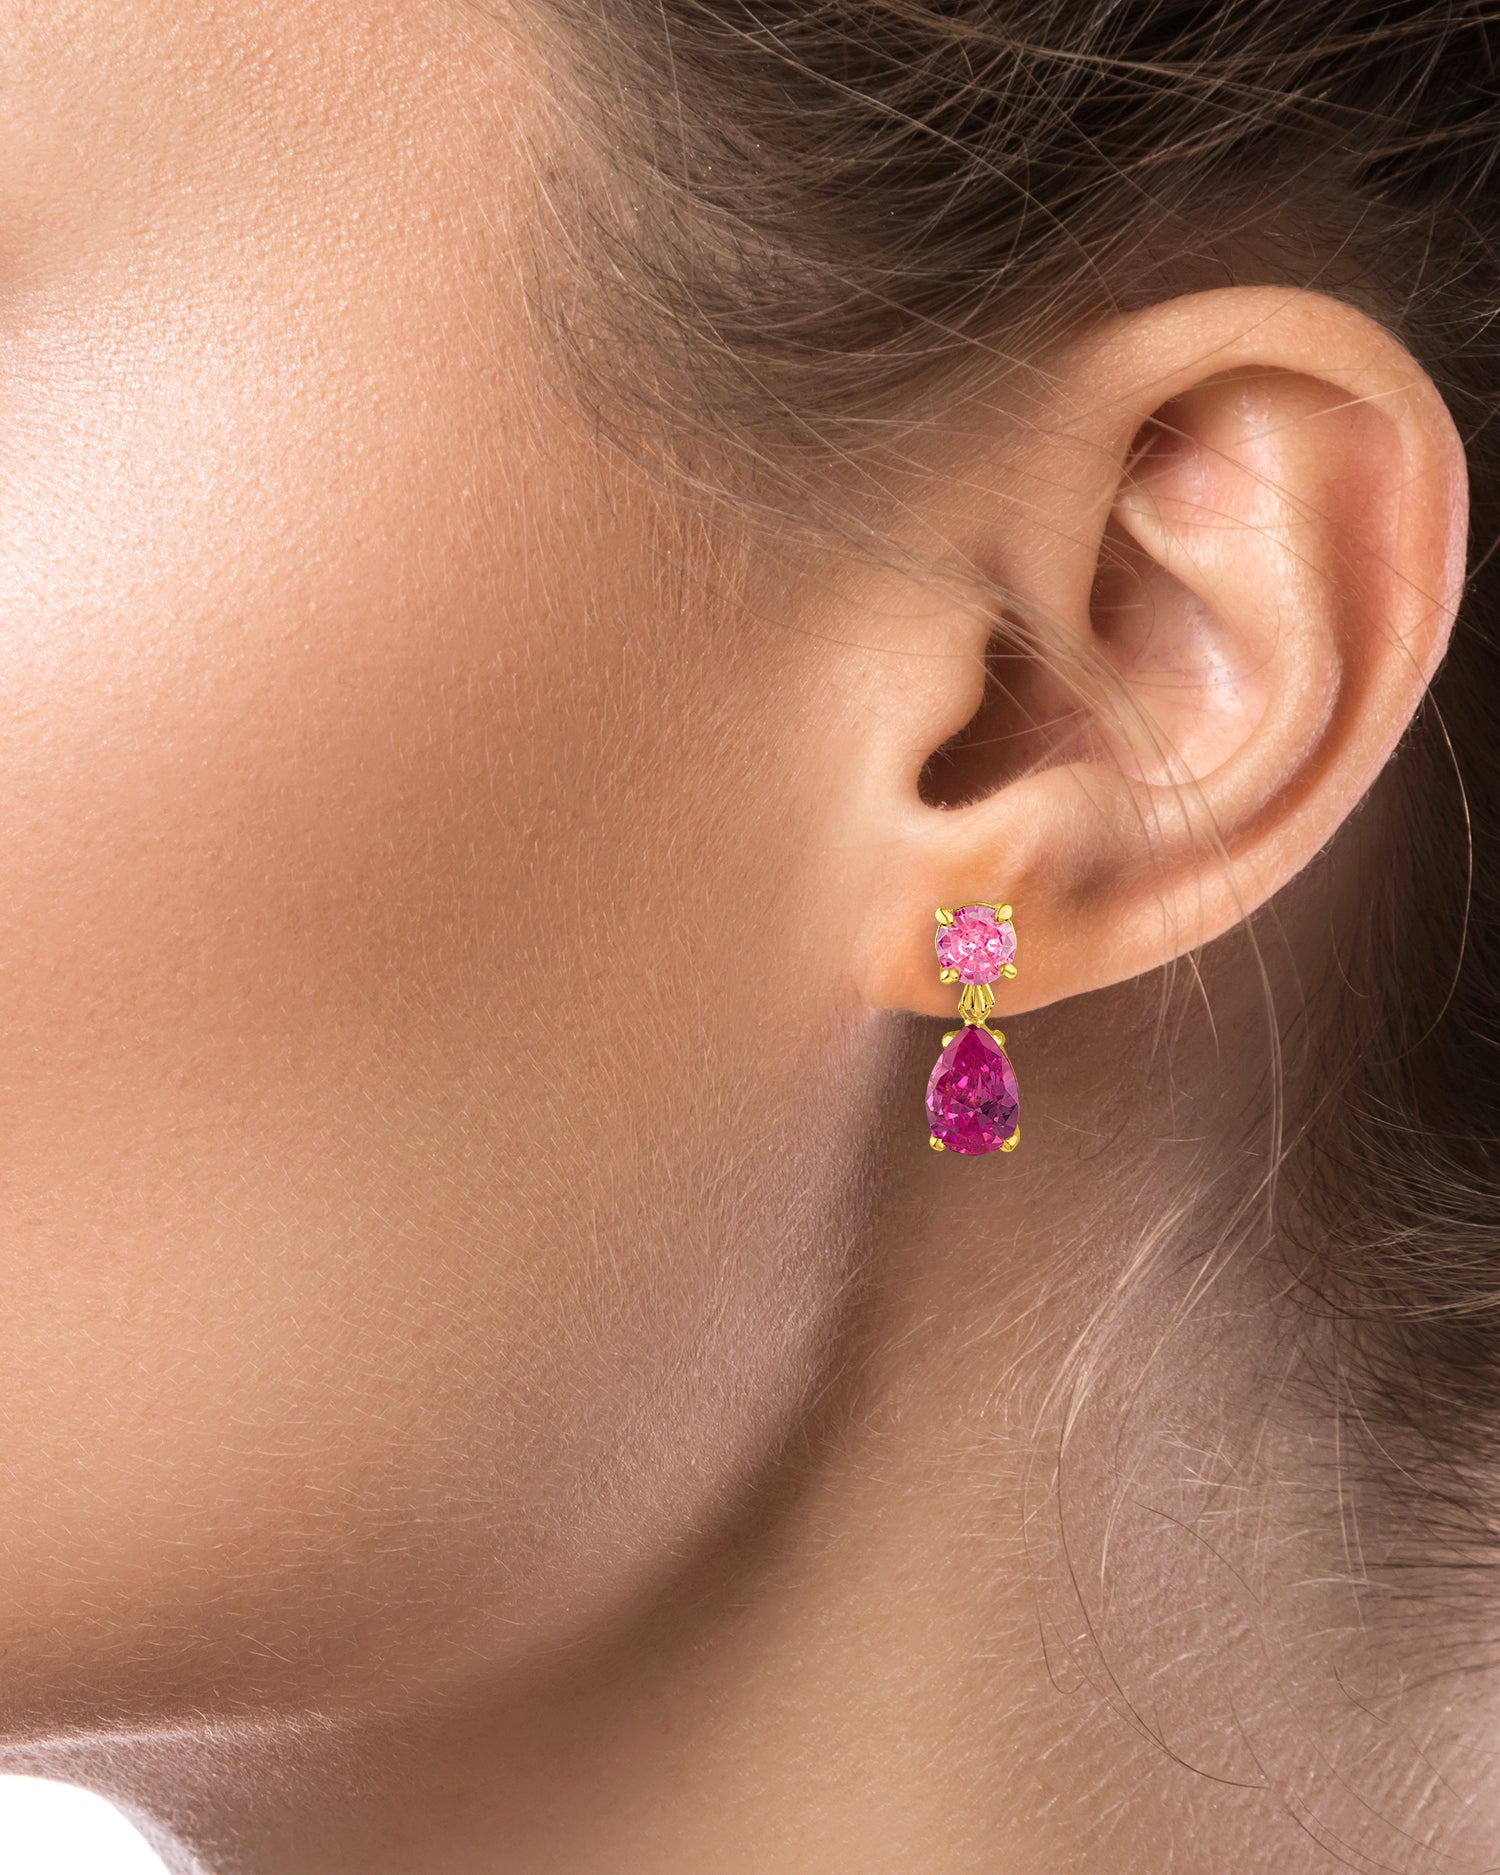 Delicate Pink Sapphire Drop Earrings